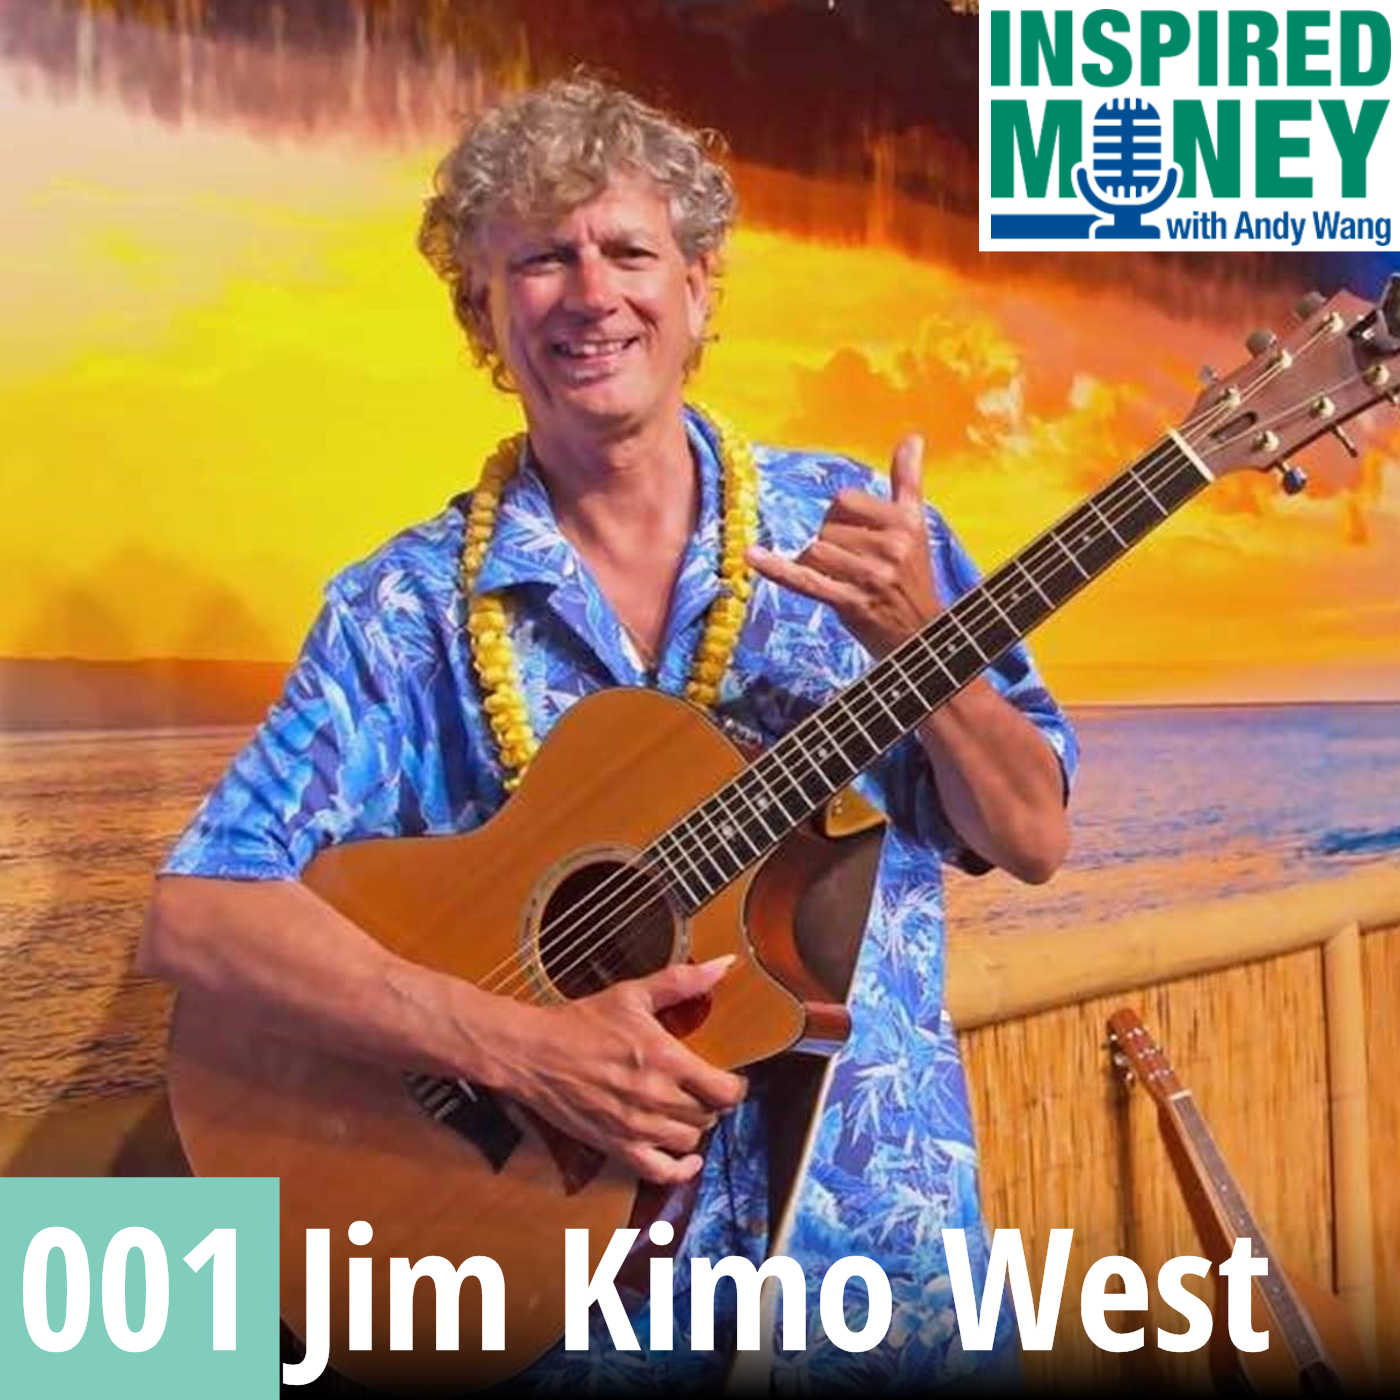 Jim Kimo West